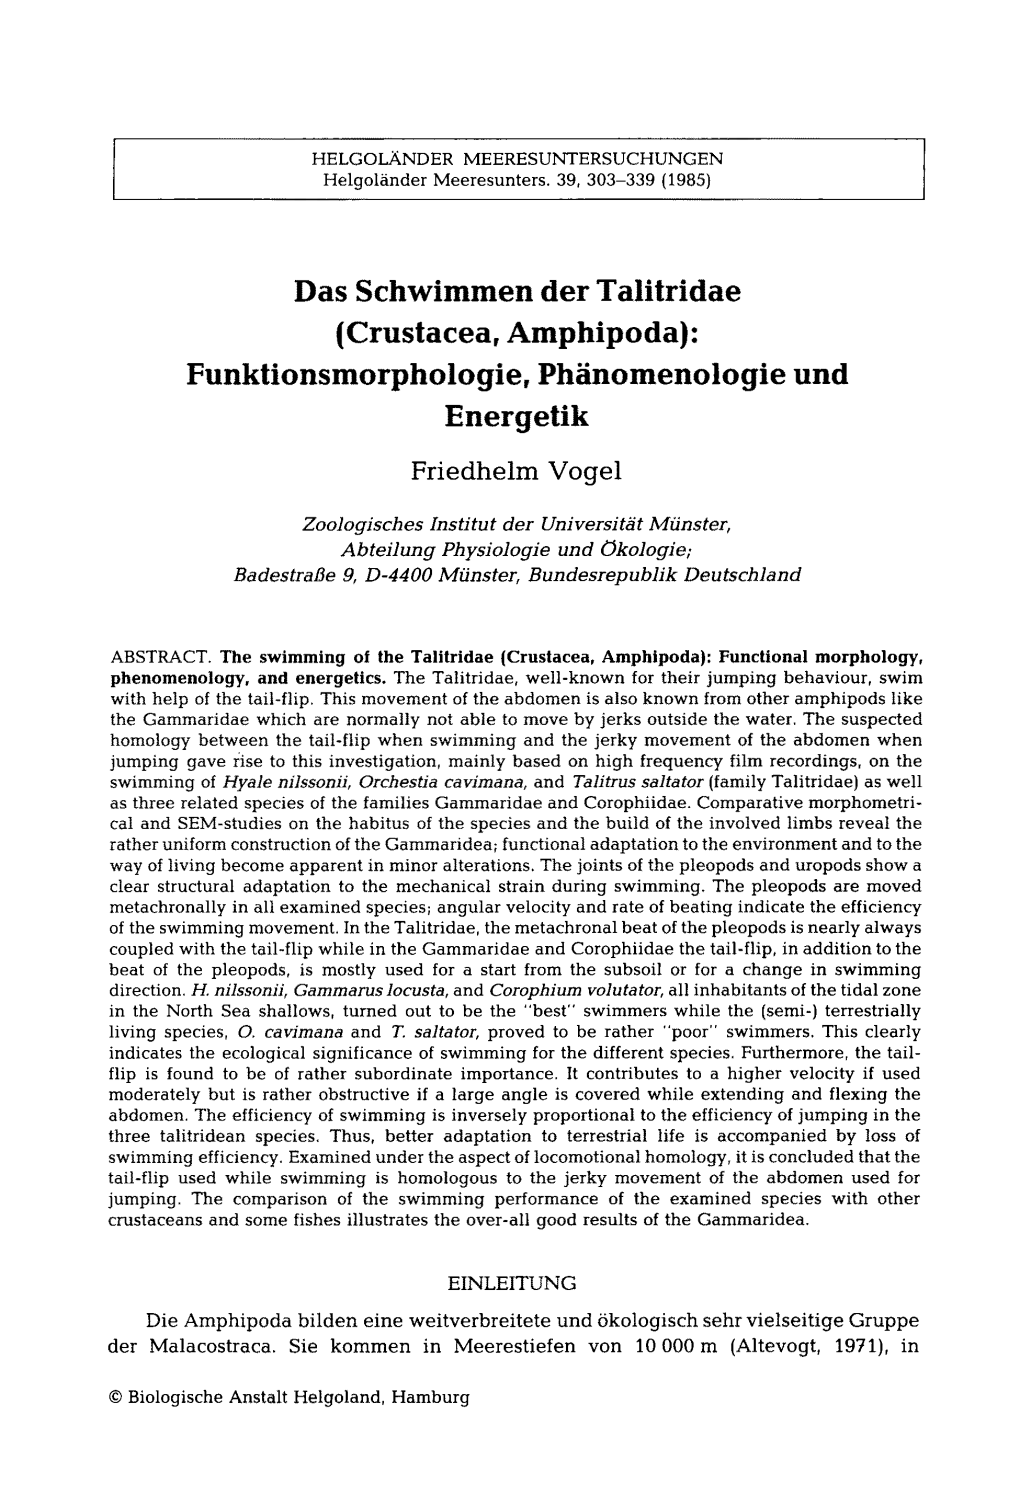 Das Schwimmen Der Talitridae (Crustacea, Amphipoda): Funktionsmorphologie, Ph Inomenologie Und Energetik Friedhelm Vogel